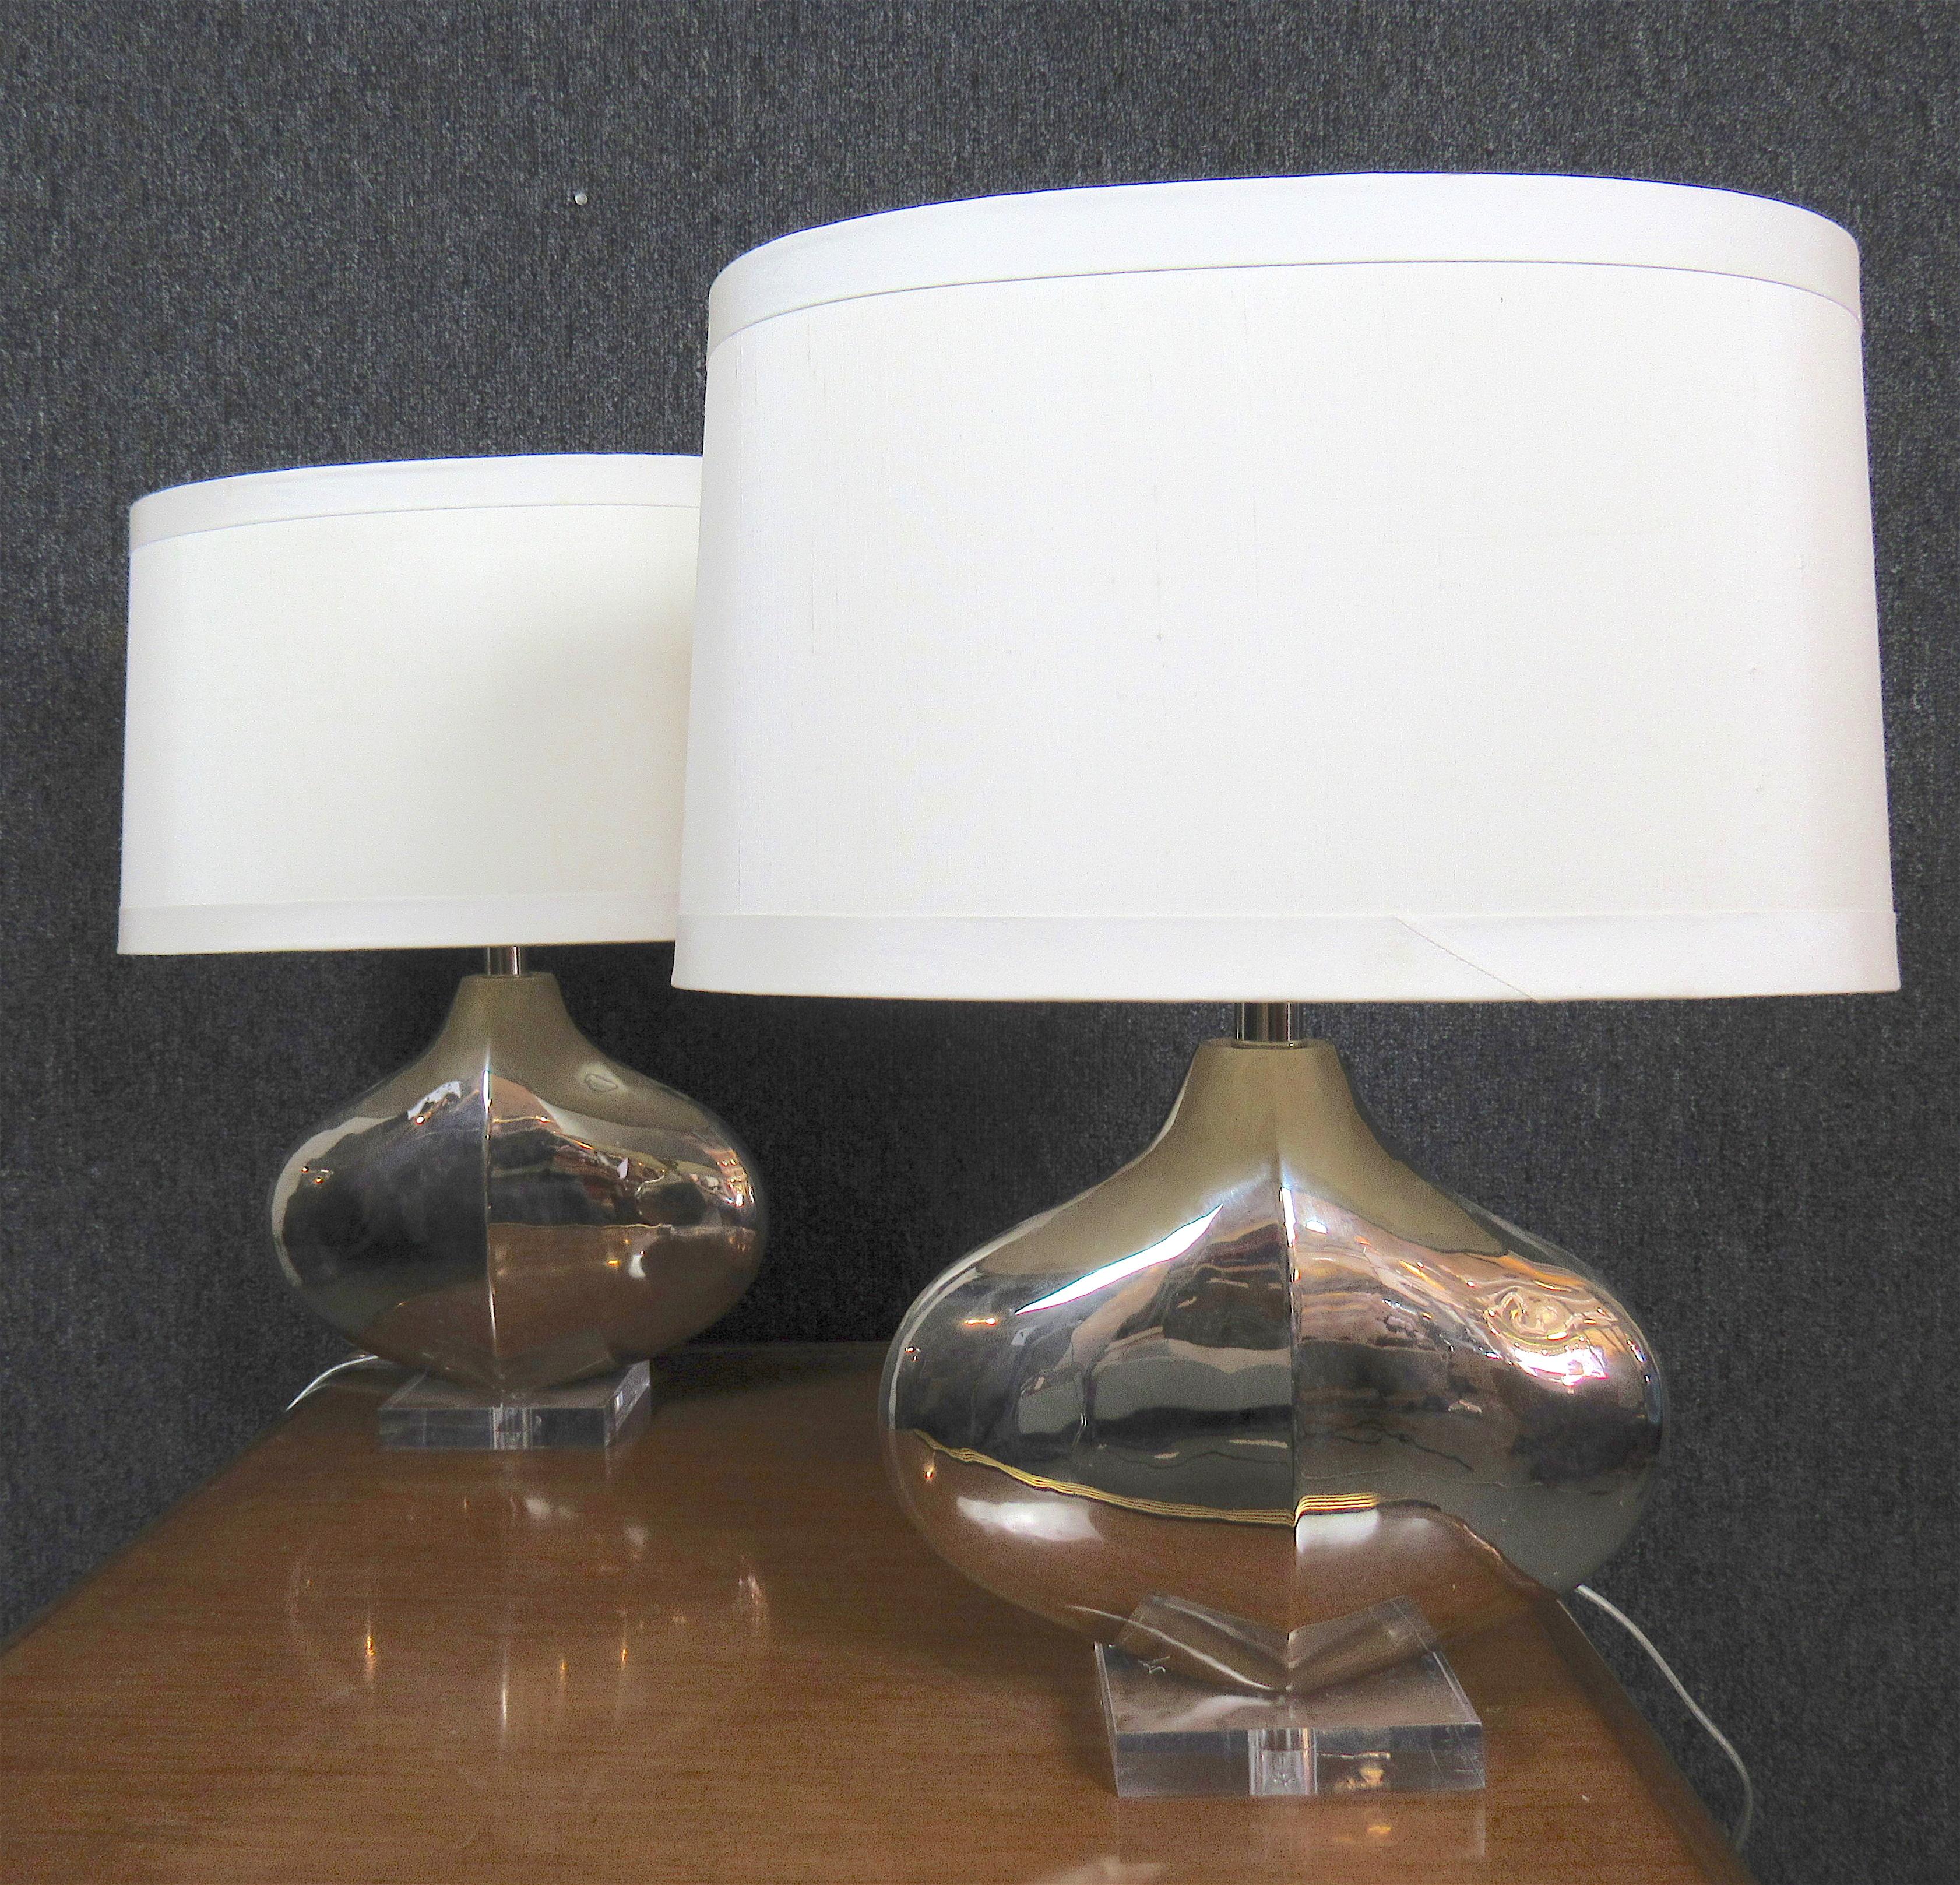 Zwei Tischlampen aus poliertem Metall, hergestellt von Tanner Kenzie. Tropfenförmige Lampe auf klarem Acrylsockel.
Bitte bestätigen Sie den Standort NY oder NJ